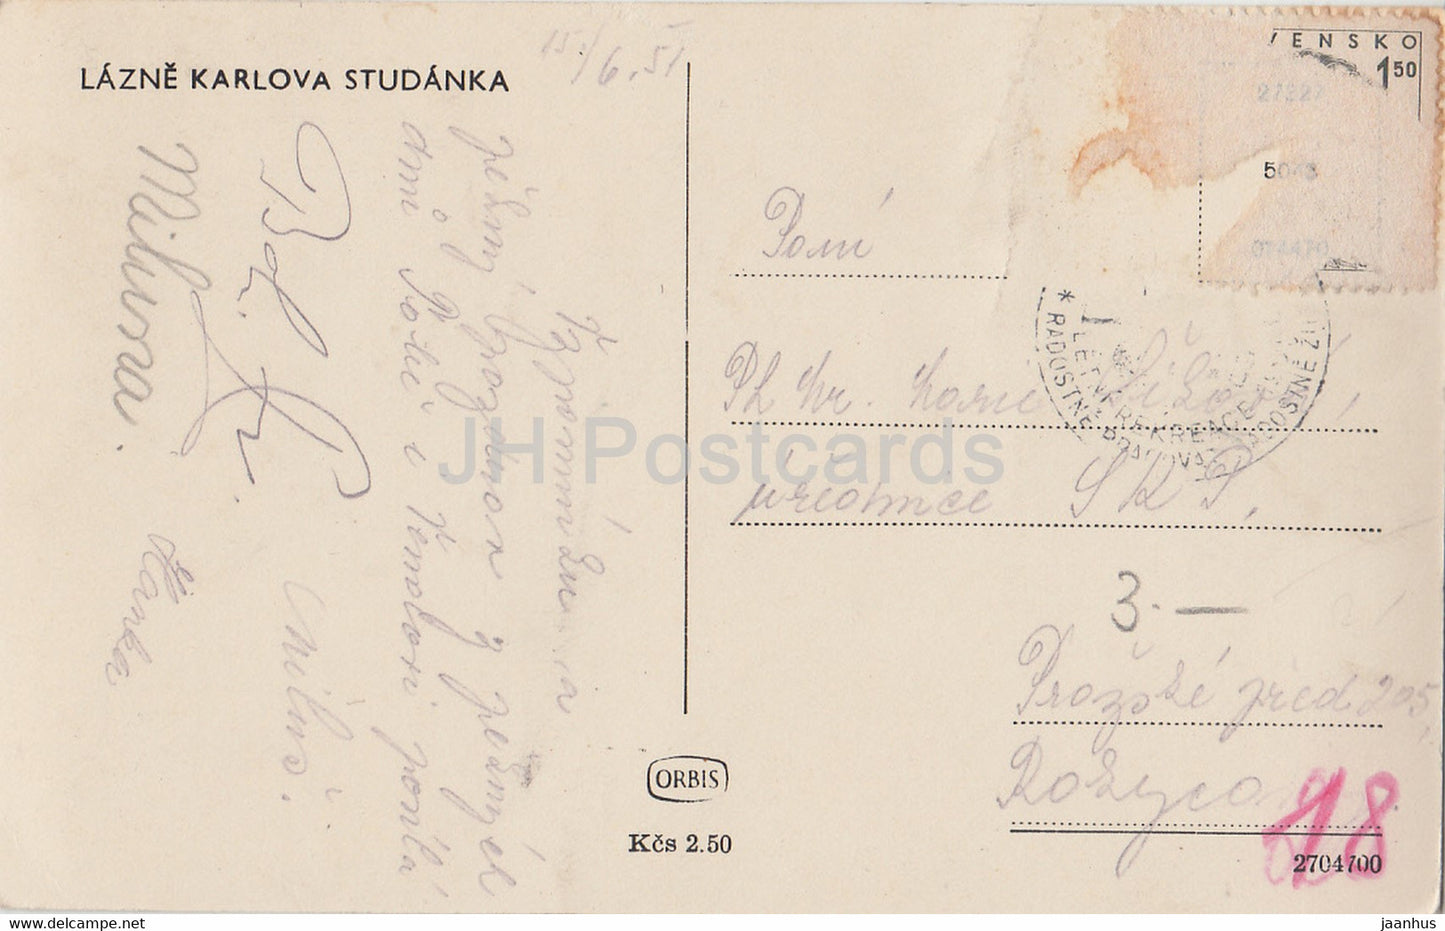 Lazne Karlova Studanka - carte postale ancienne - 1951 - Tchécoslovaquie - République tchèque - utilisé